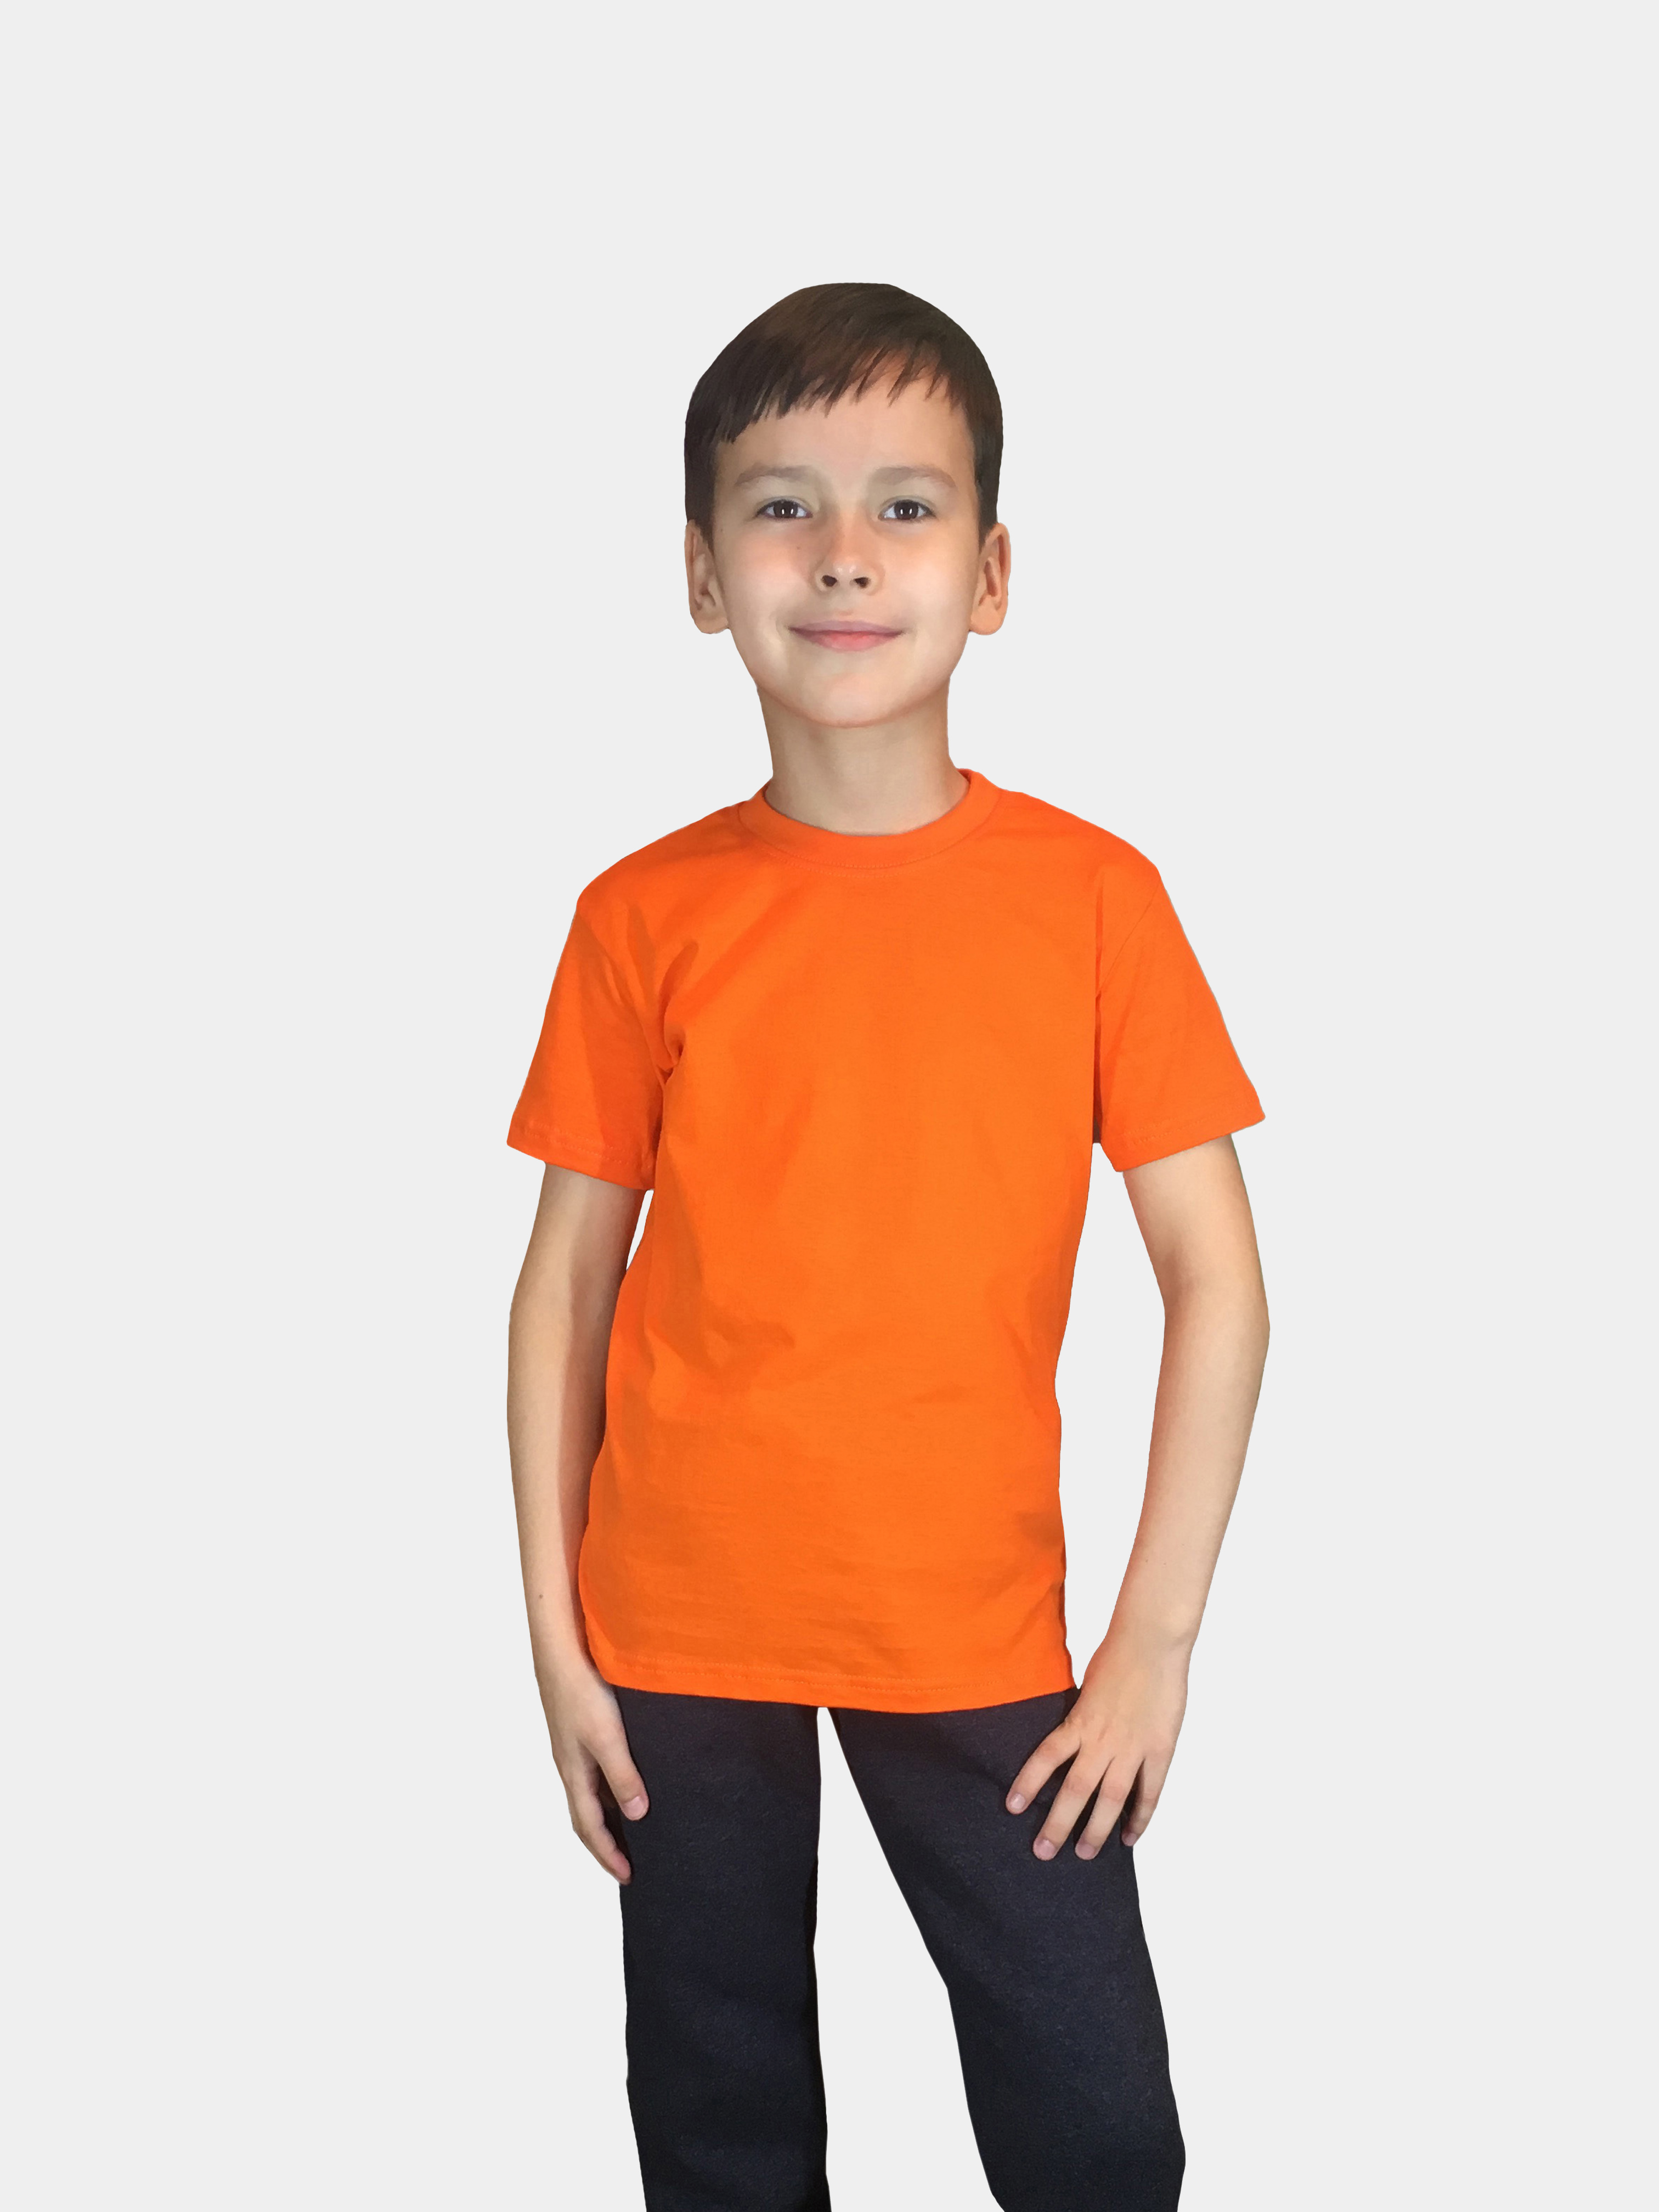 

Футболка детская Детрик, оранжевая размер 104, Ф-1-113, Оранжевый, Ф-1-113